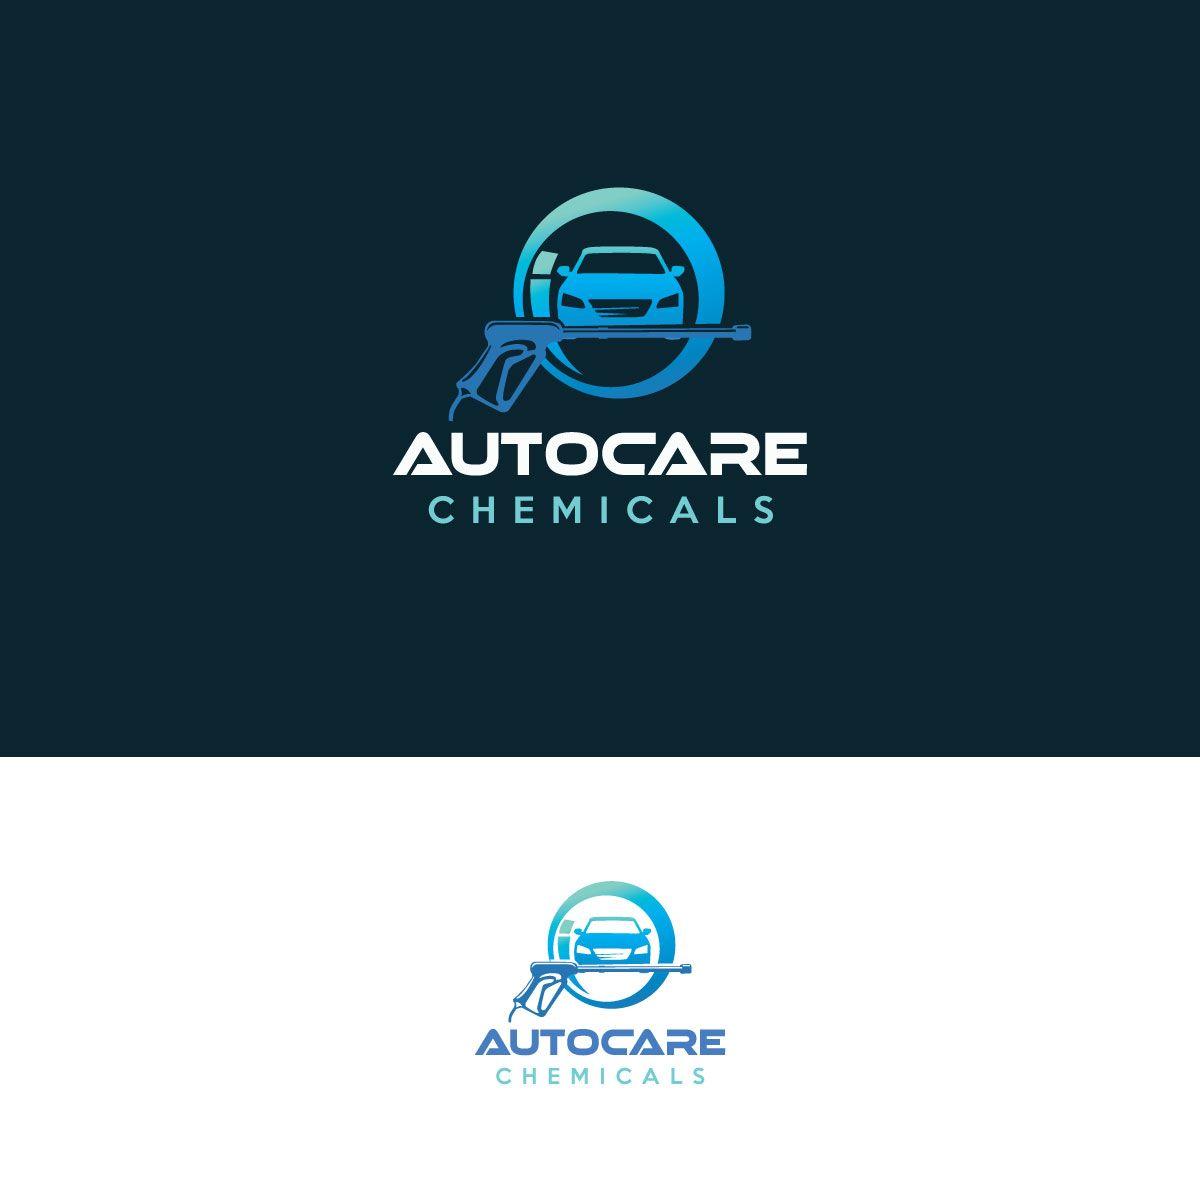 Bluestreak Logo - Logo Design for Autocare Chemicals by dipanwita das 2. Design